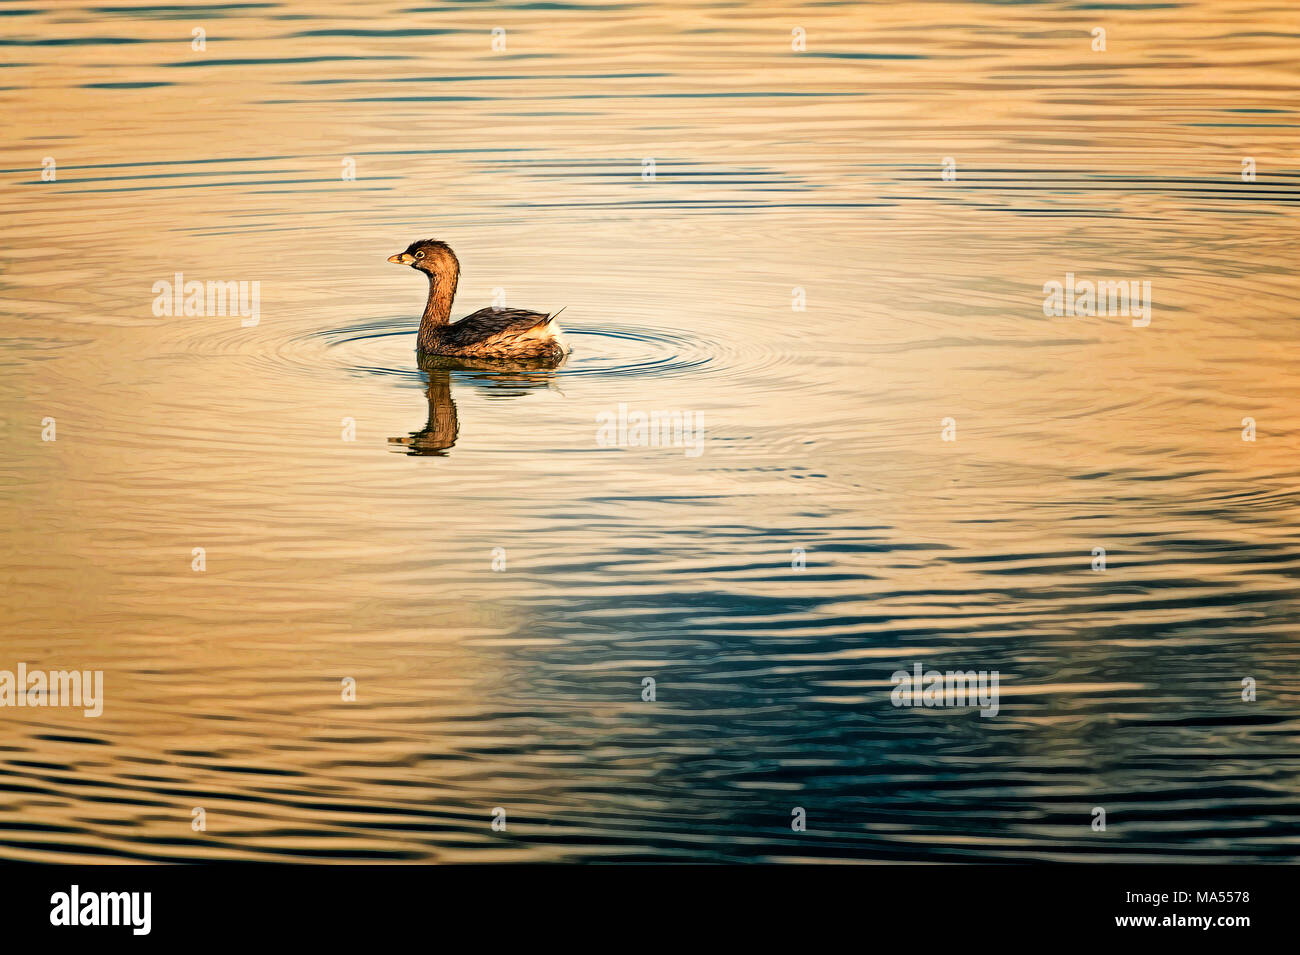 Ein Baby goose schwimmt in einem Teich in dieser minimalistischen Foto mit Copyspace. Stockfoto